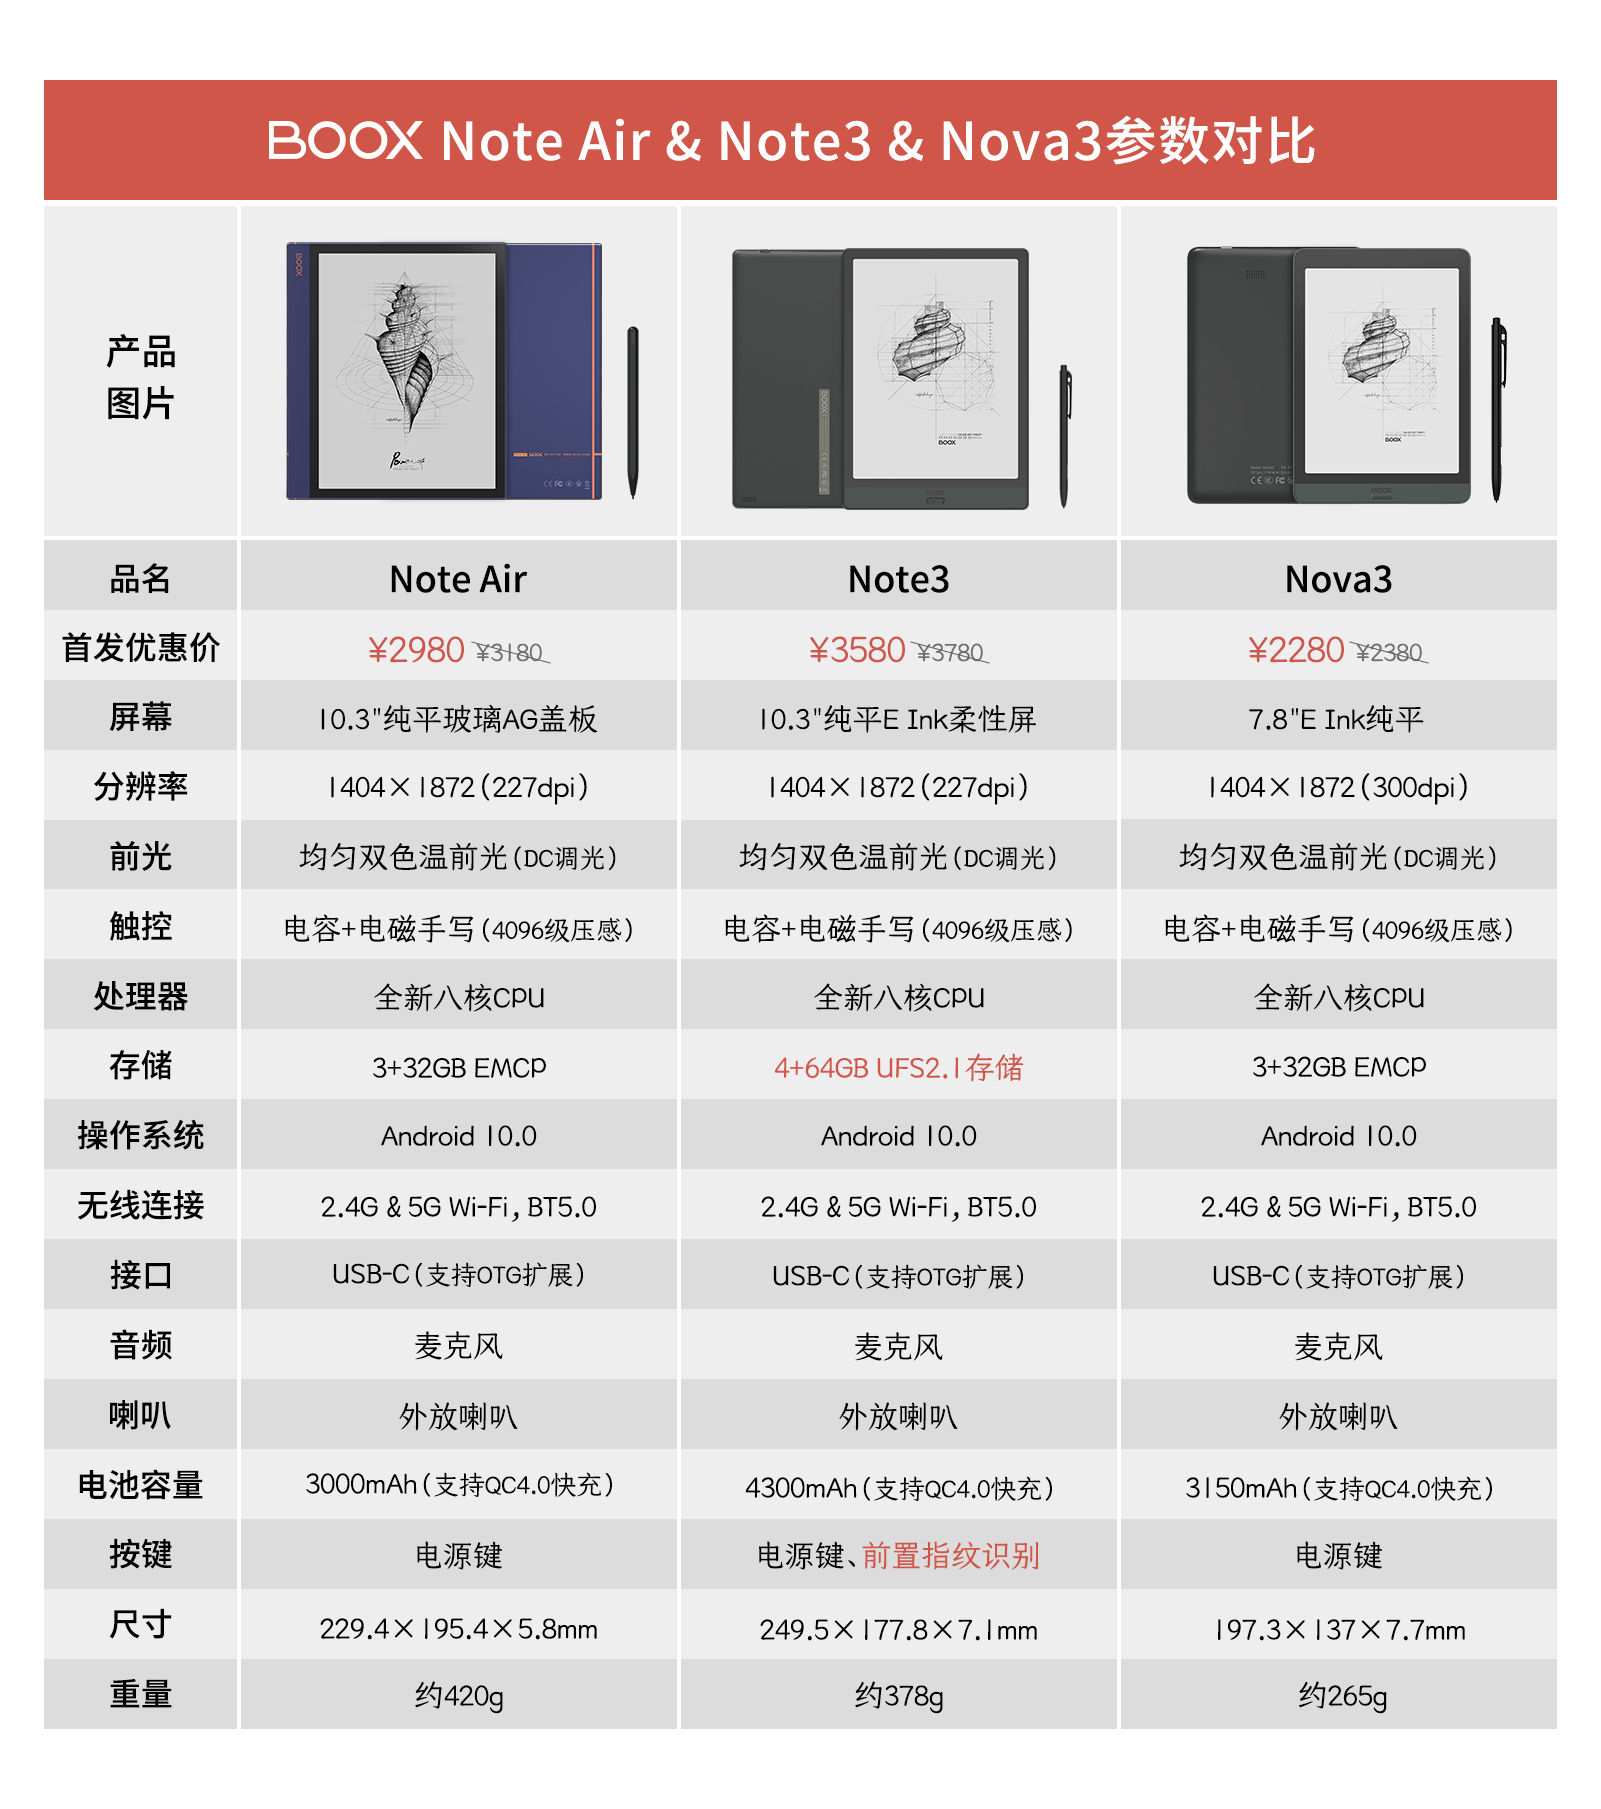 旗舰再升级！文石BOOX Note3、Nova3 等三款智能墨水平板新品惊艳上市